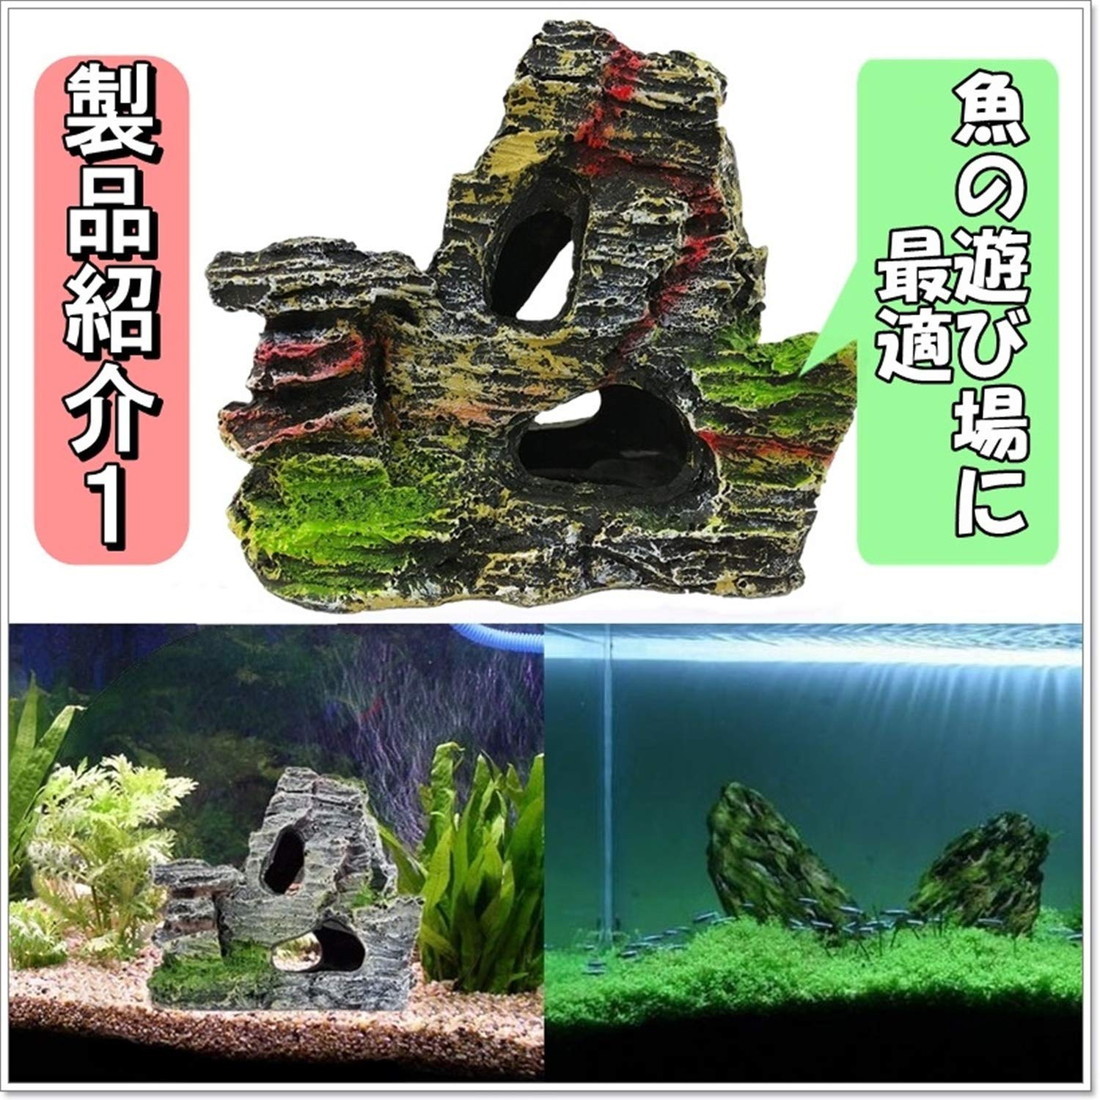 水槽 岩 アクアリウム オーナメント 2種 セット A 樹脂 製 模型 熱帯魚 飼育 飾り オブジェ 背景 水景 風景 装飾 岩石 コケ  (送料無料)hos-j55